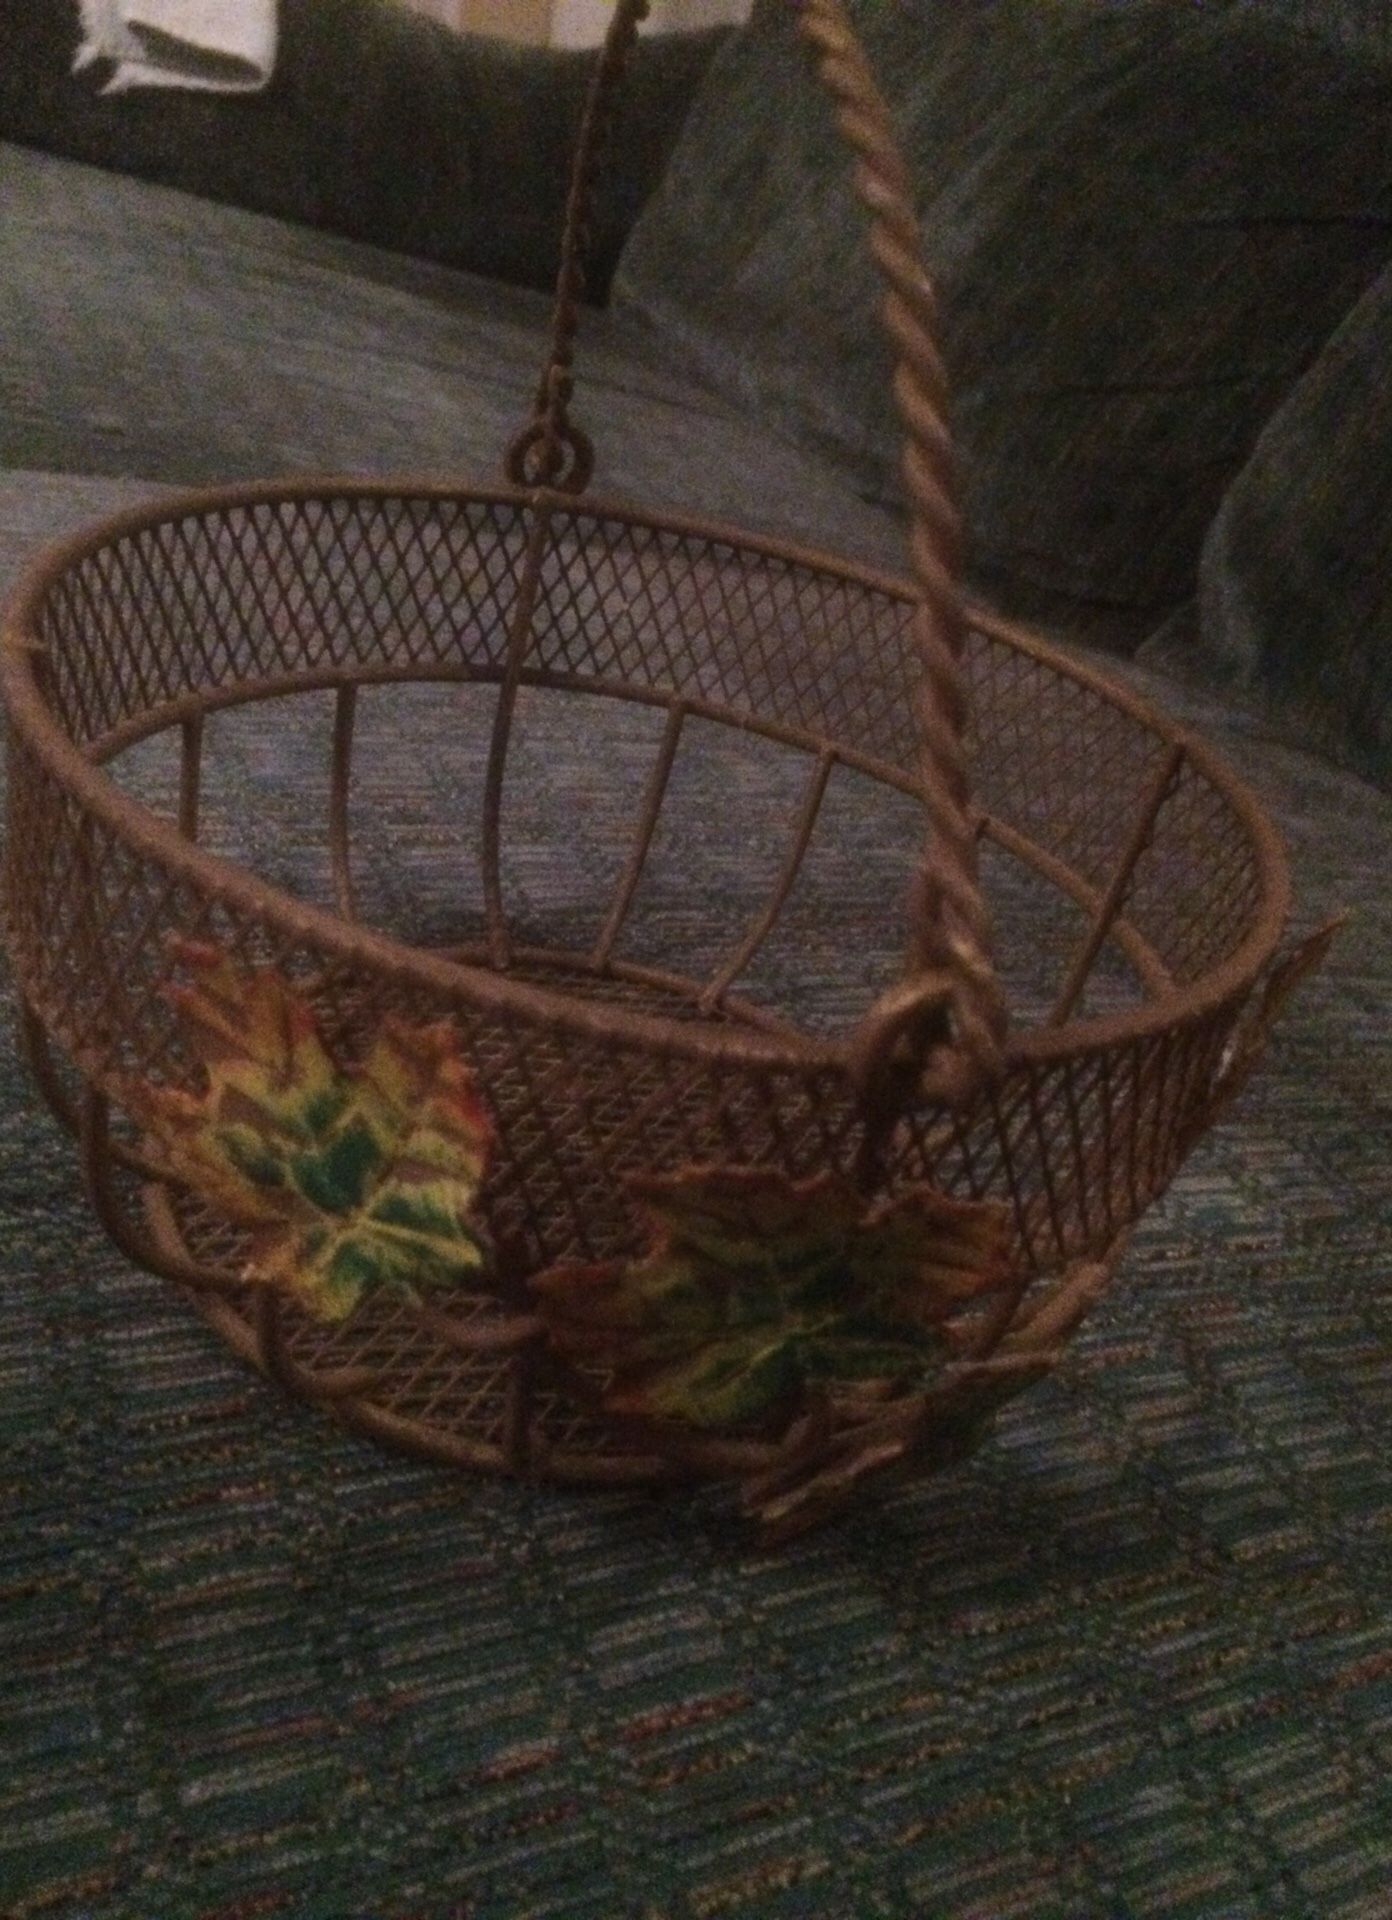 Fall basket